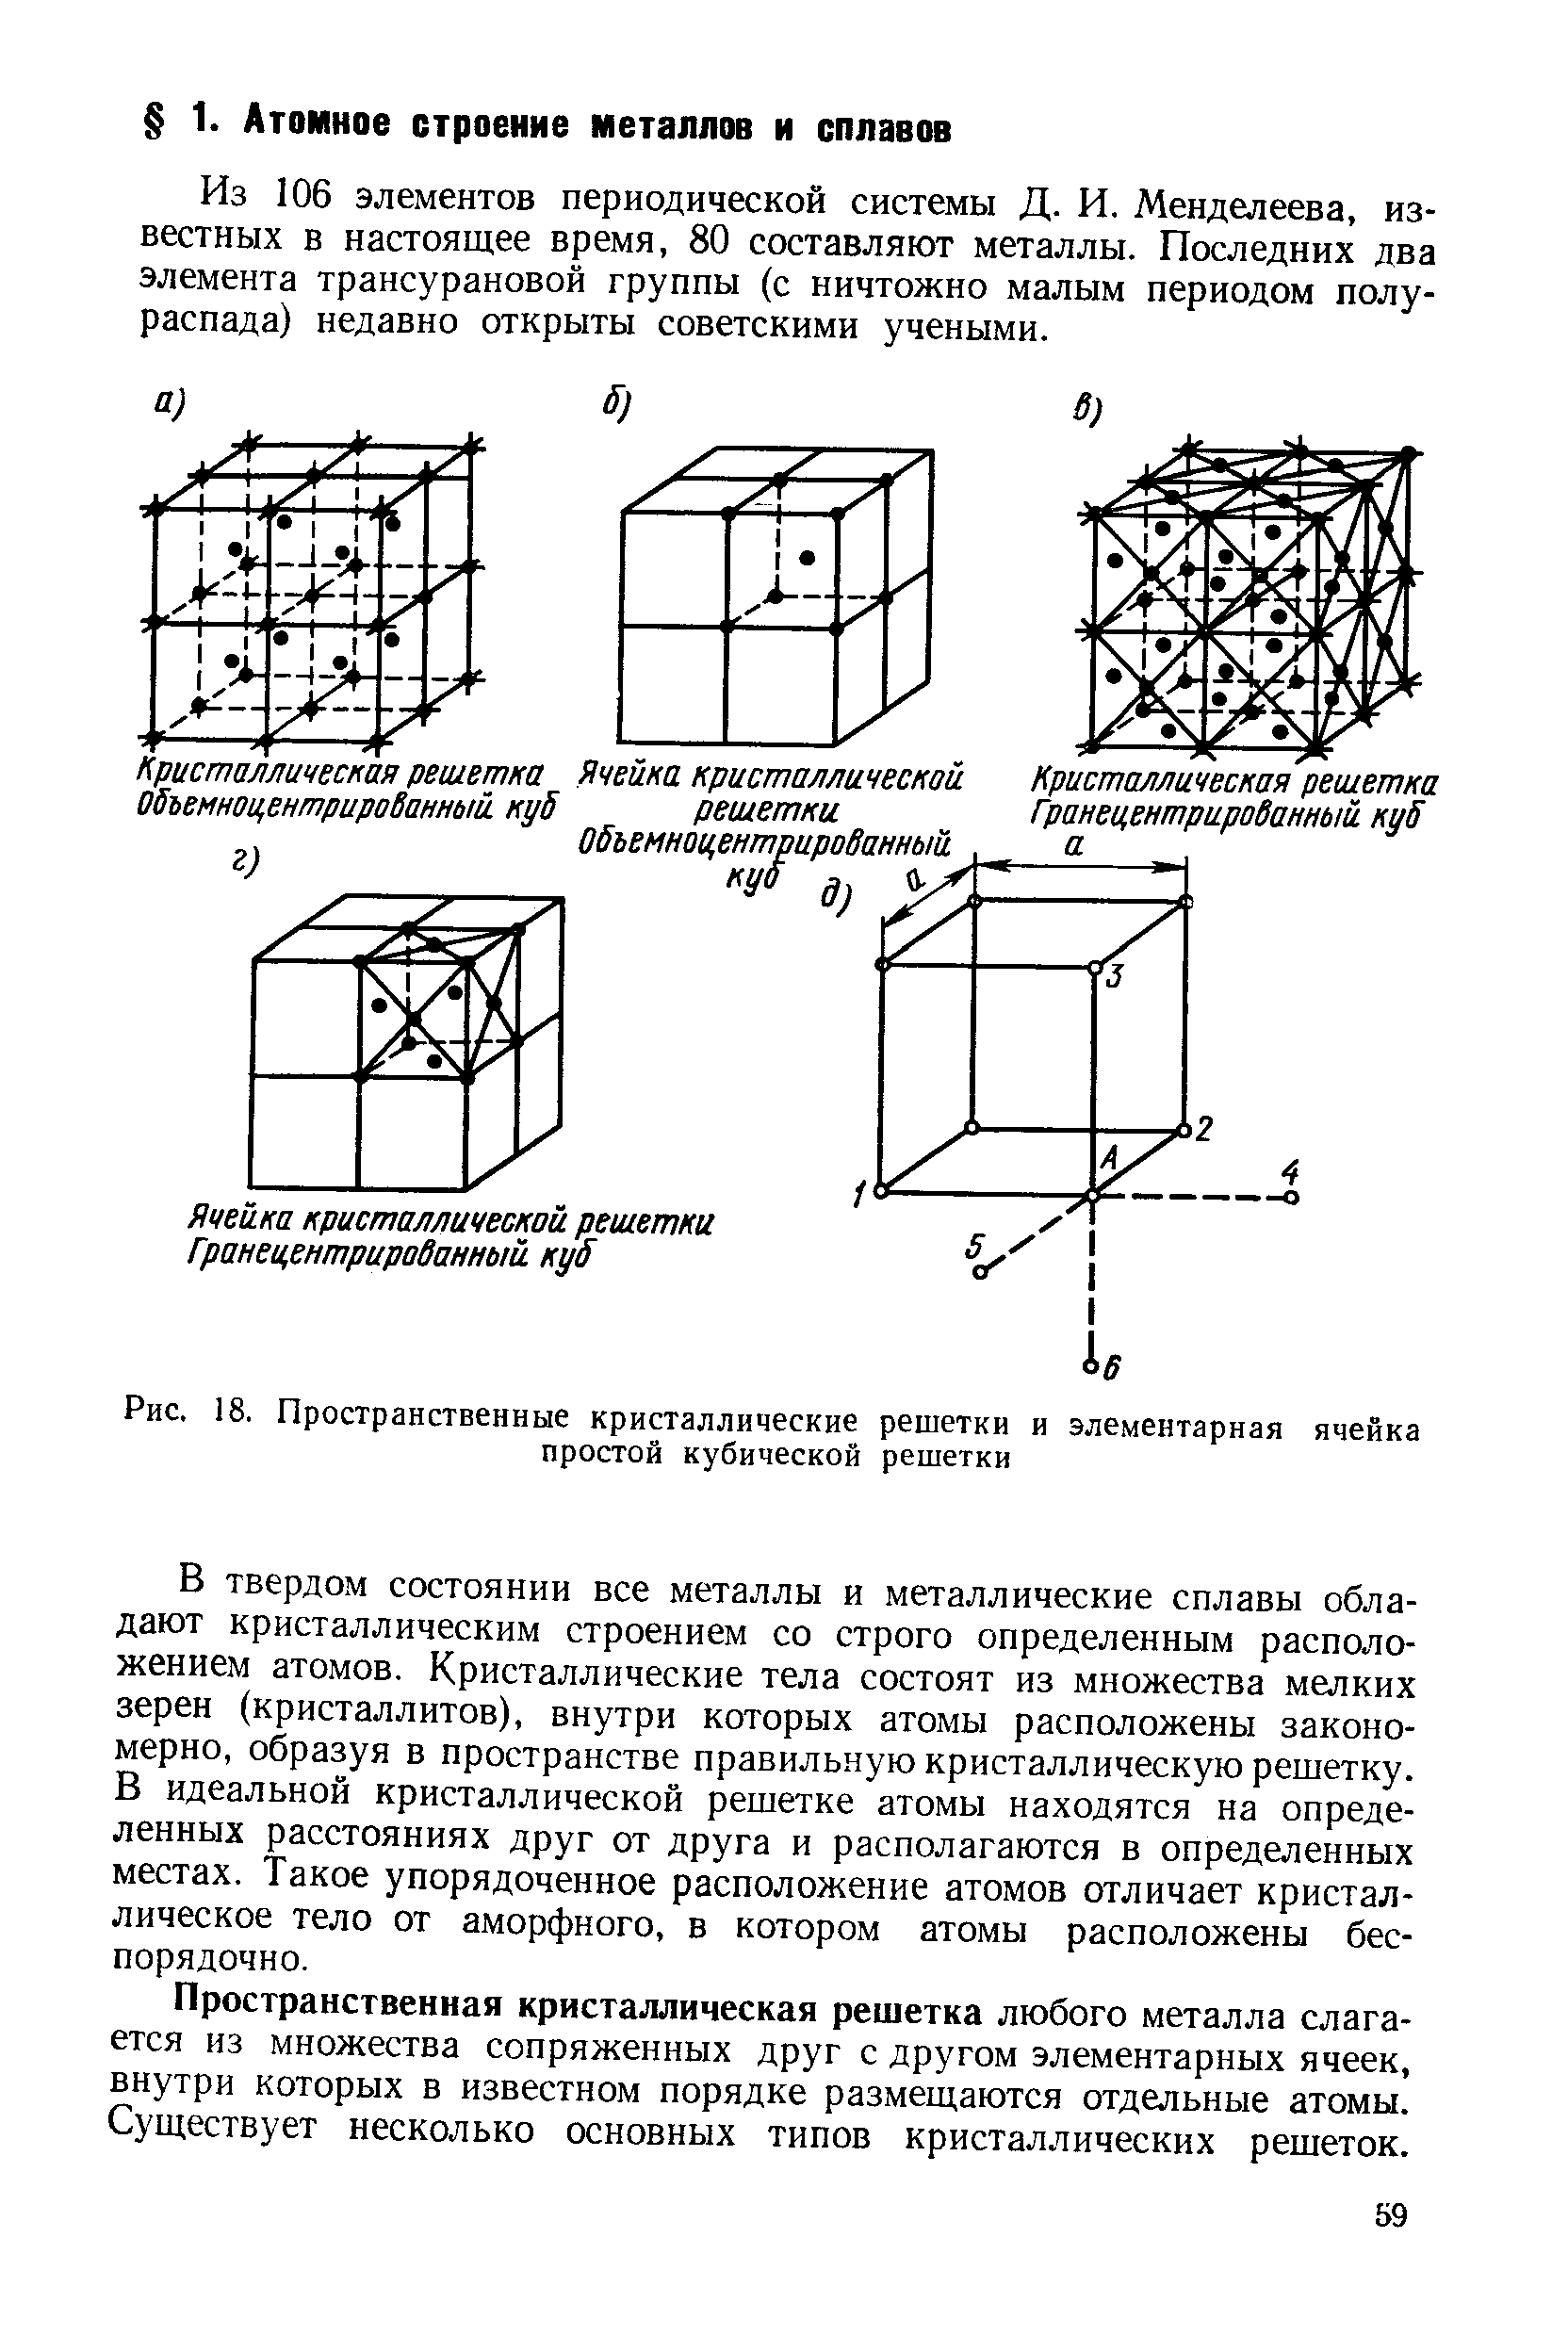 Кубическая элементарная ячейка